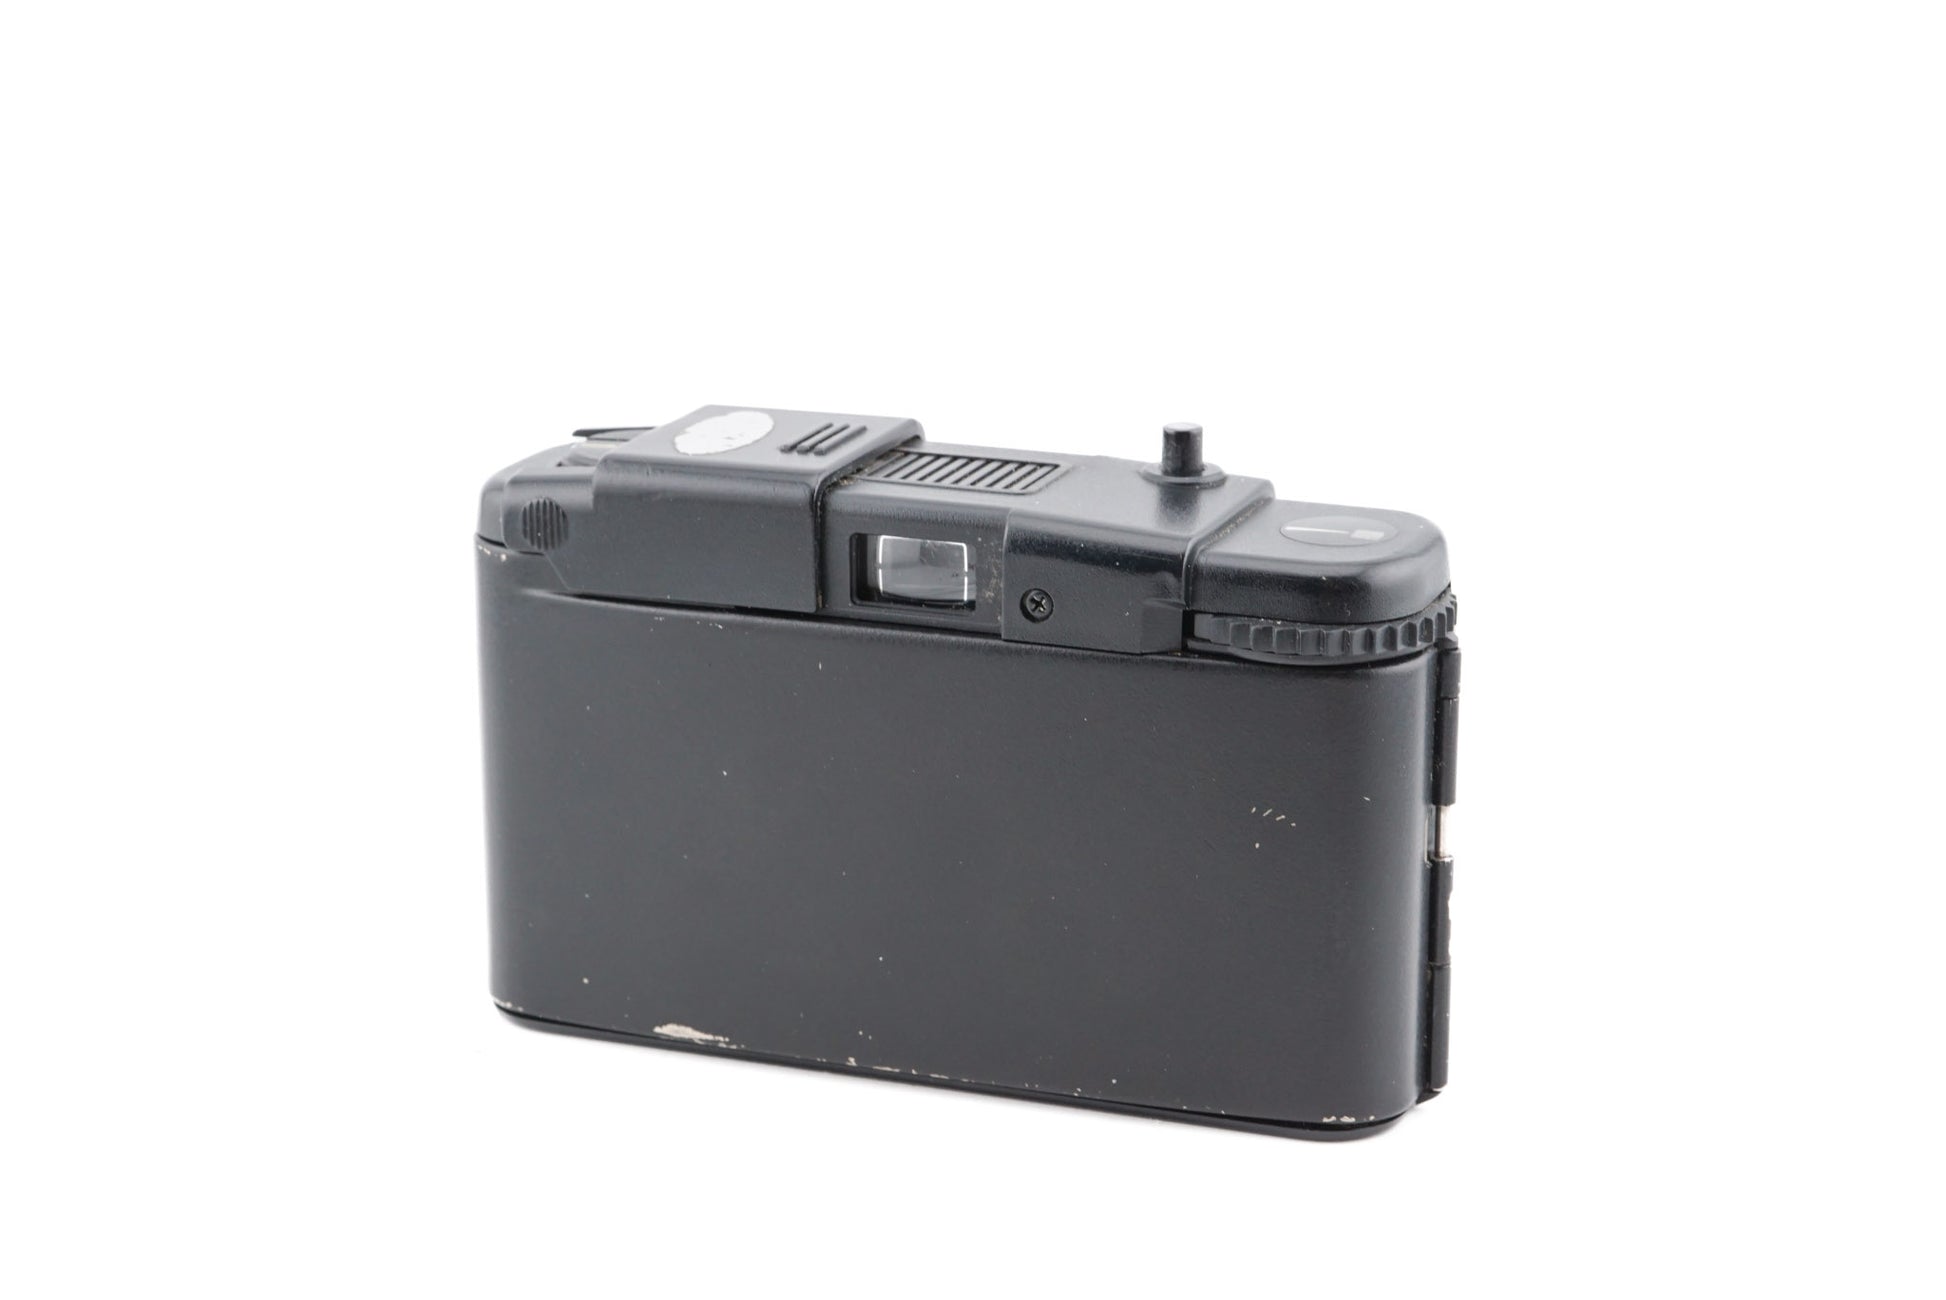 Olympus Pen EE-2 - Camera – Kamerastore